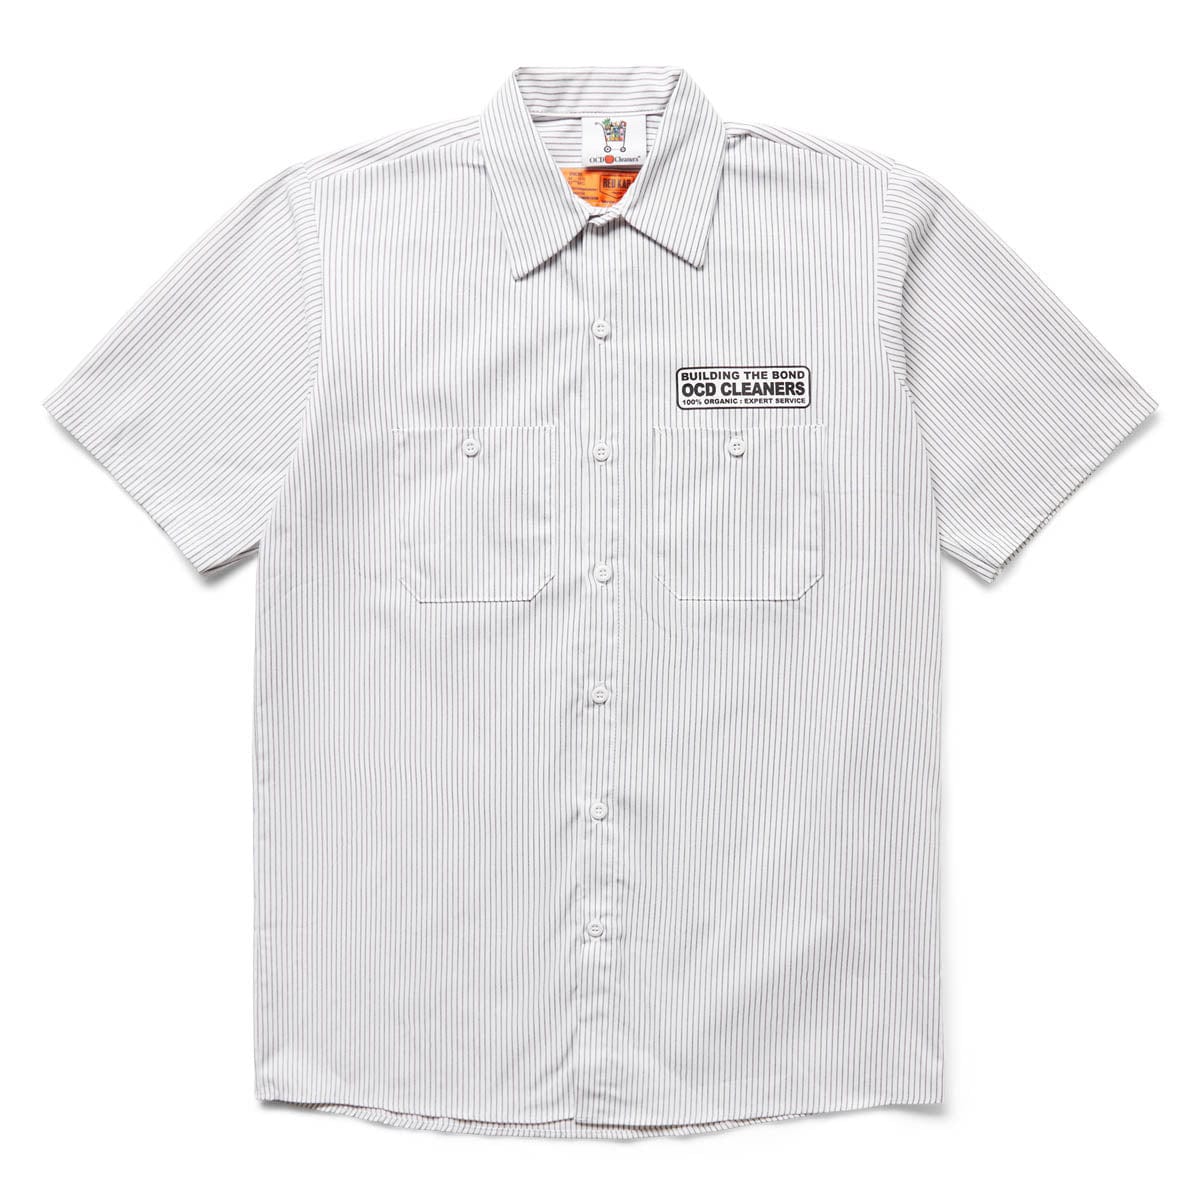 OCD Cleaners Shirts X BODEGA WORK SHIRT